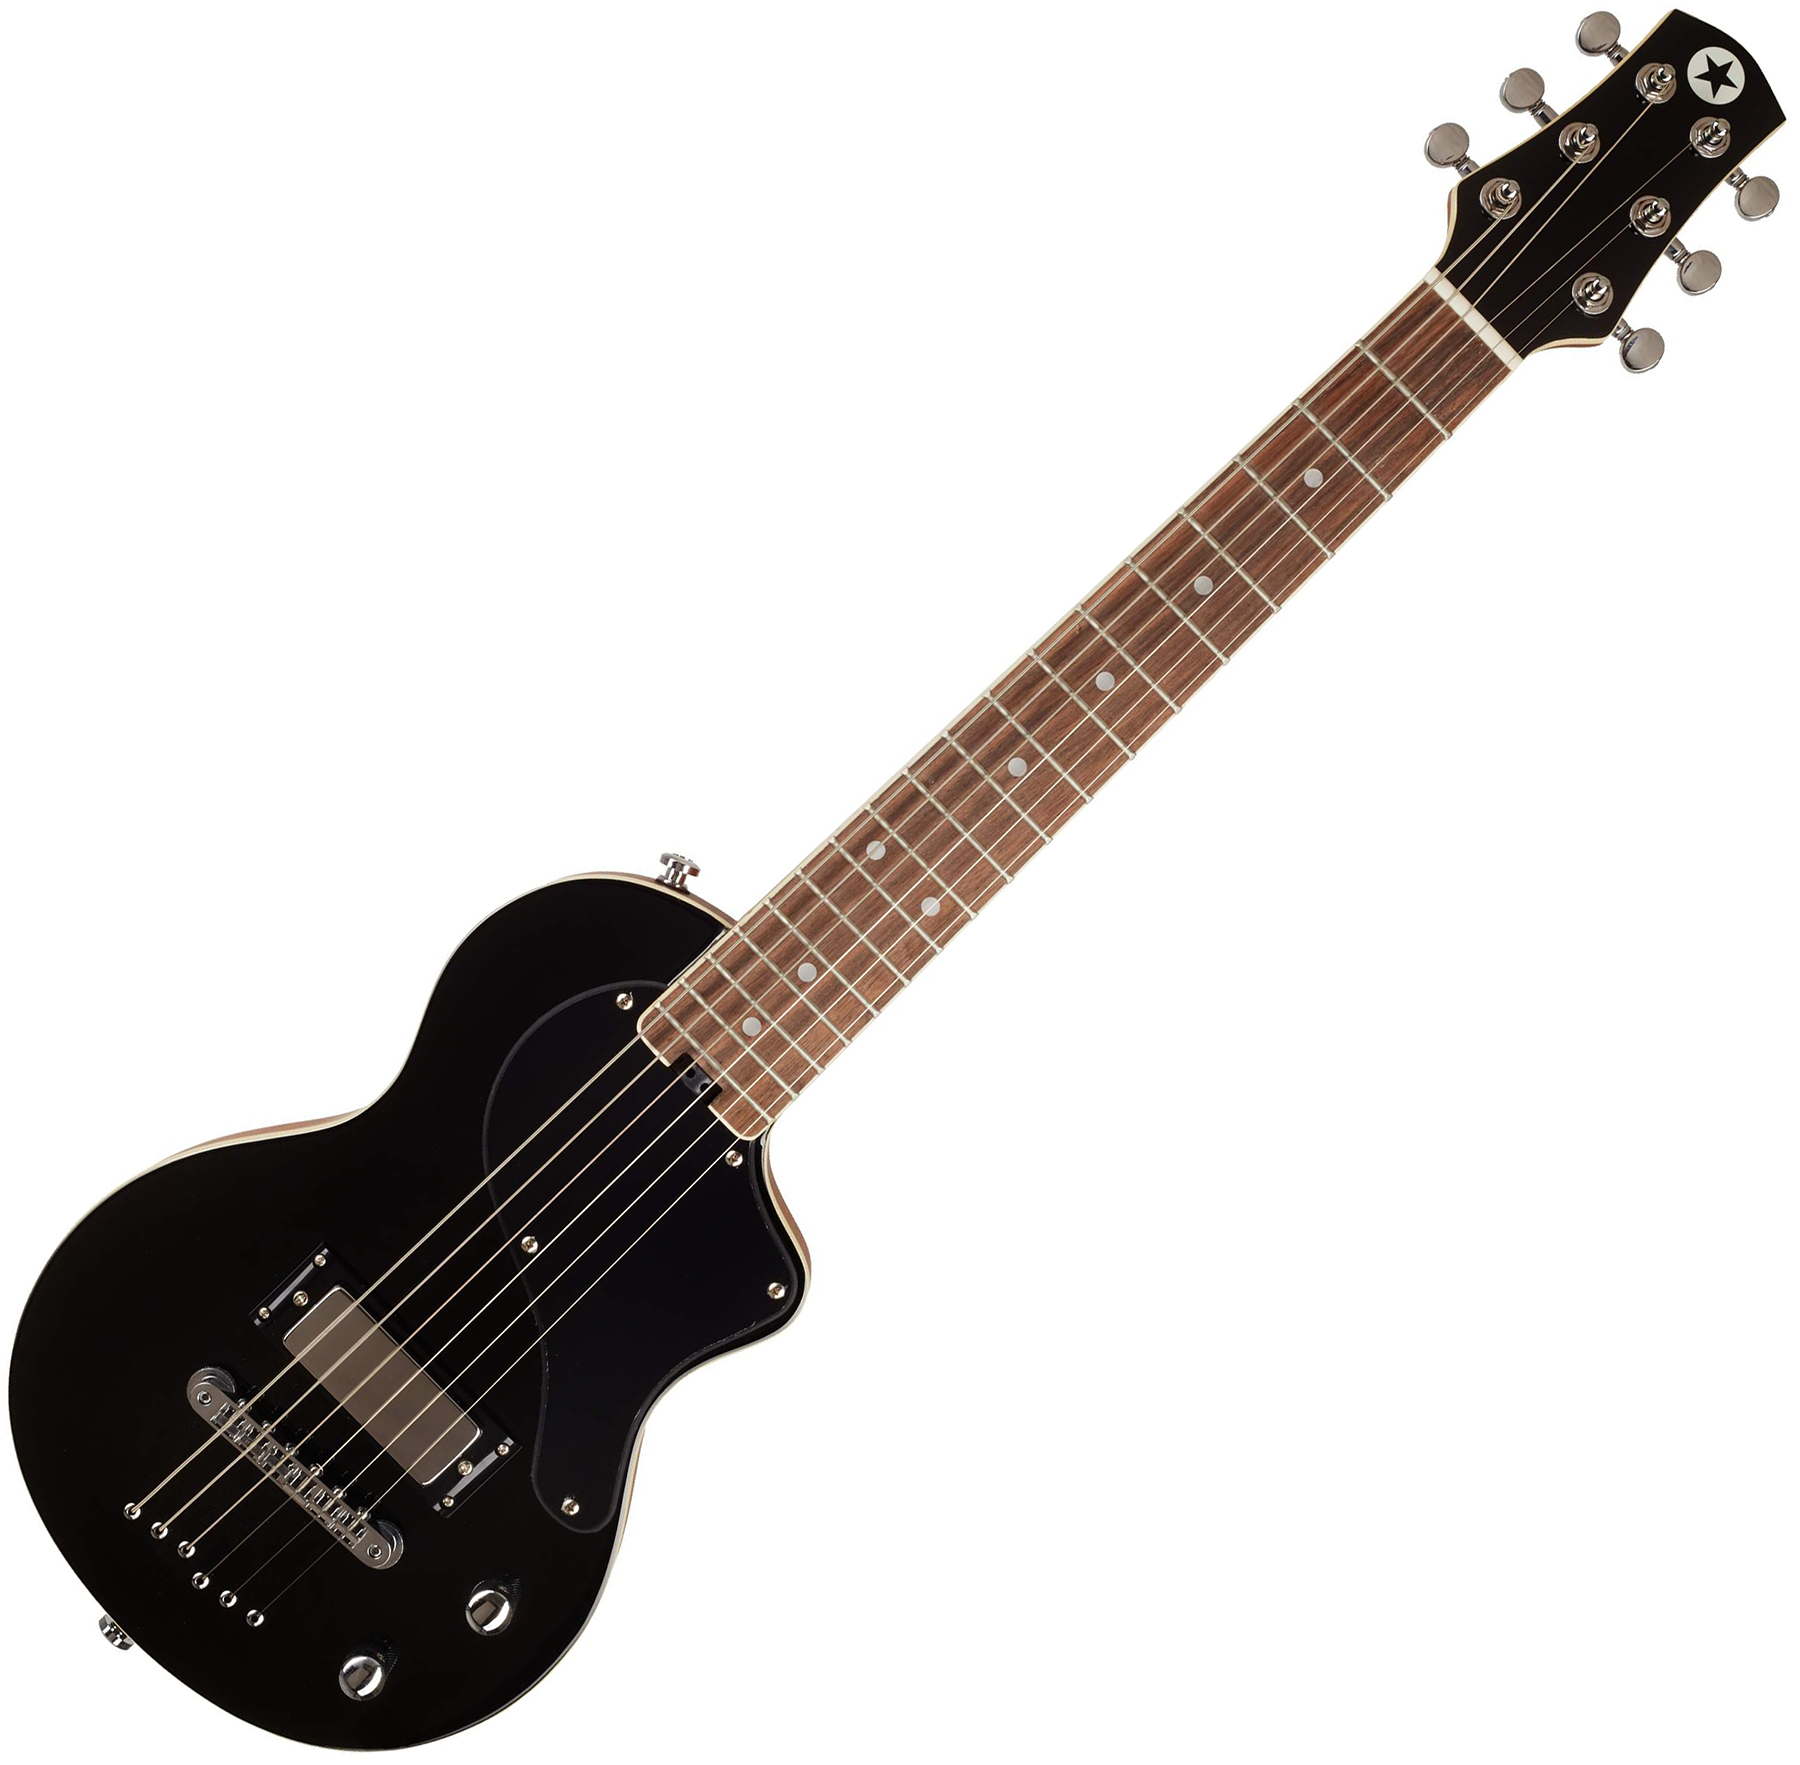 Blackstar Carry-on Travel Guitar Standard Pack +amplug2 Fly +housse - Jet Black - E-Gitarre Set - Variation 1